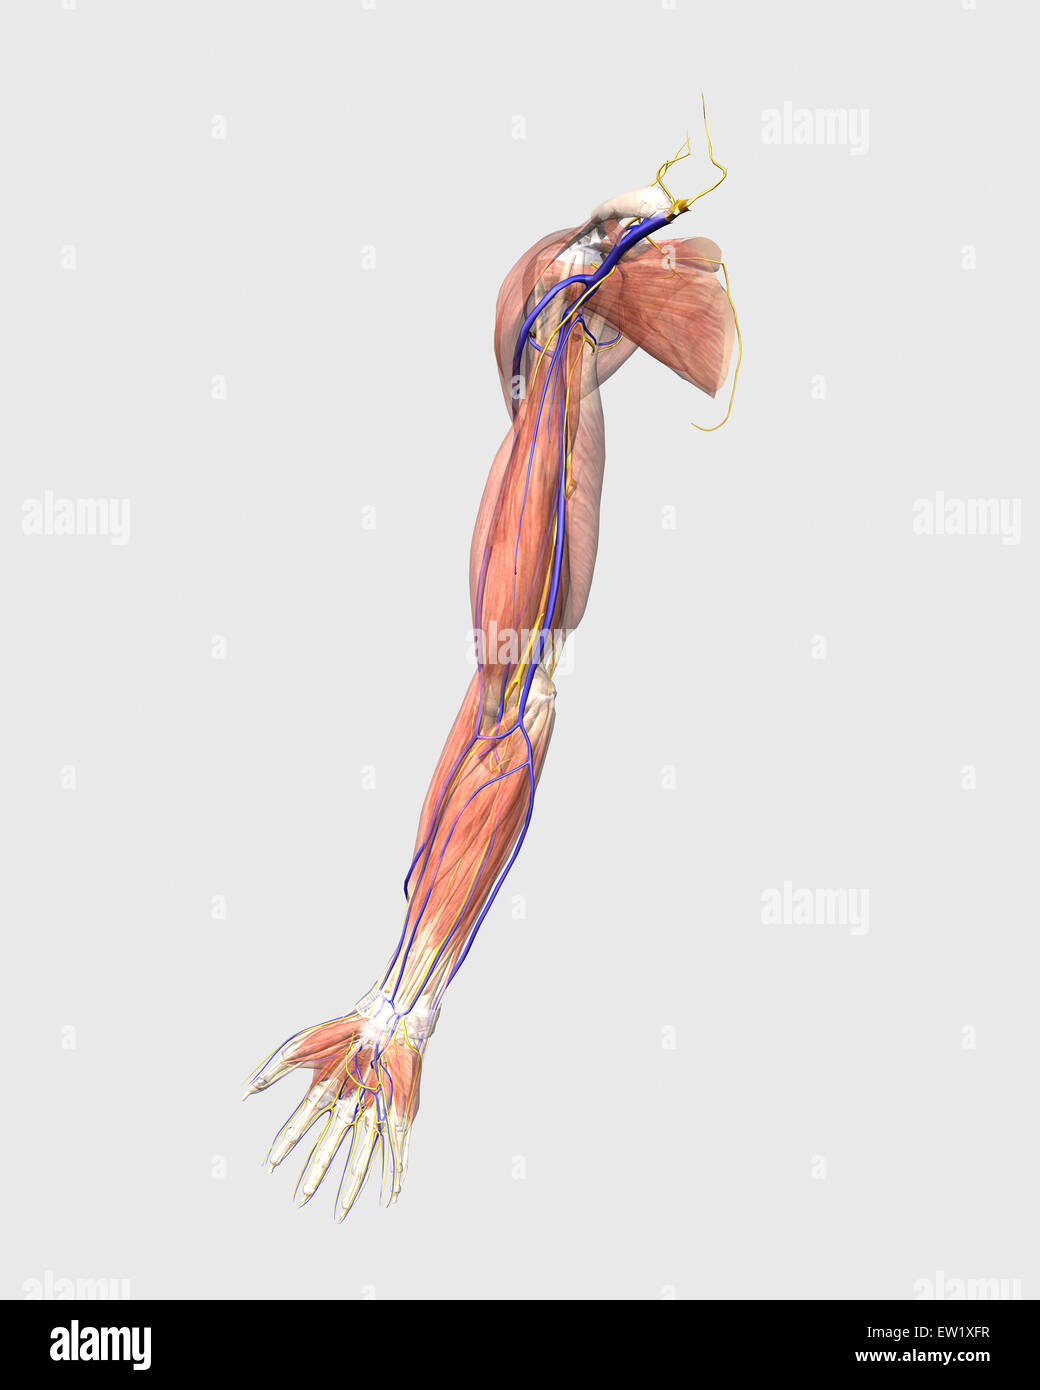 Illustrazione medica del braccio umano i muscoli, vene e nervi. Foto Stock